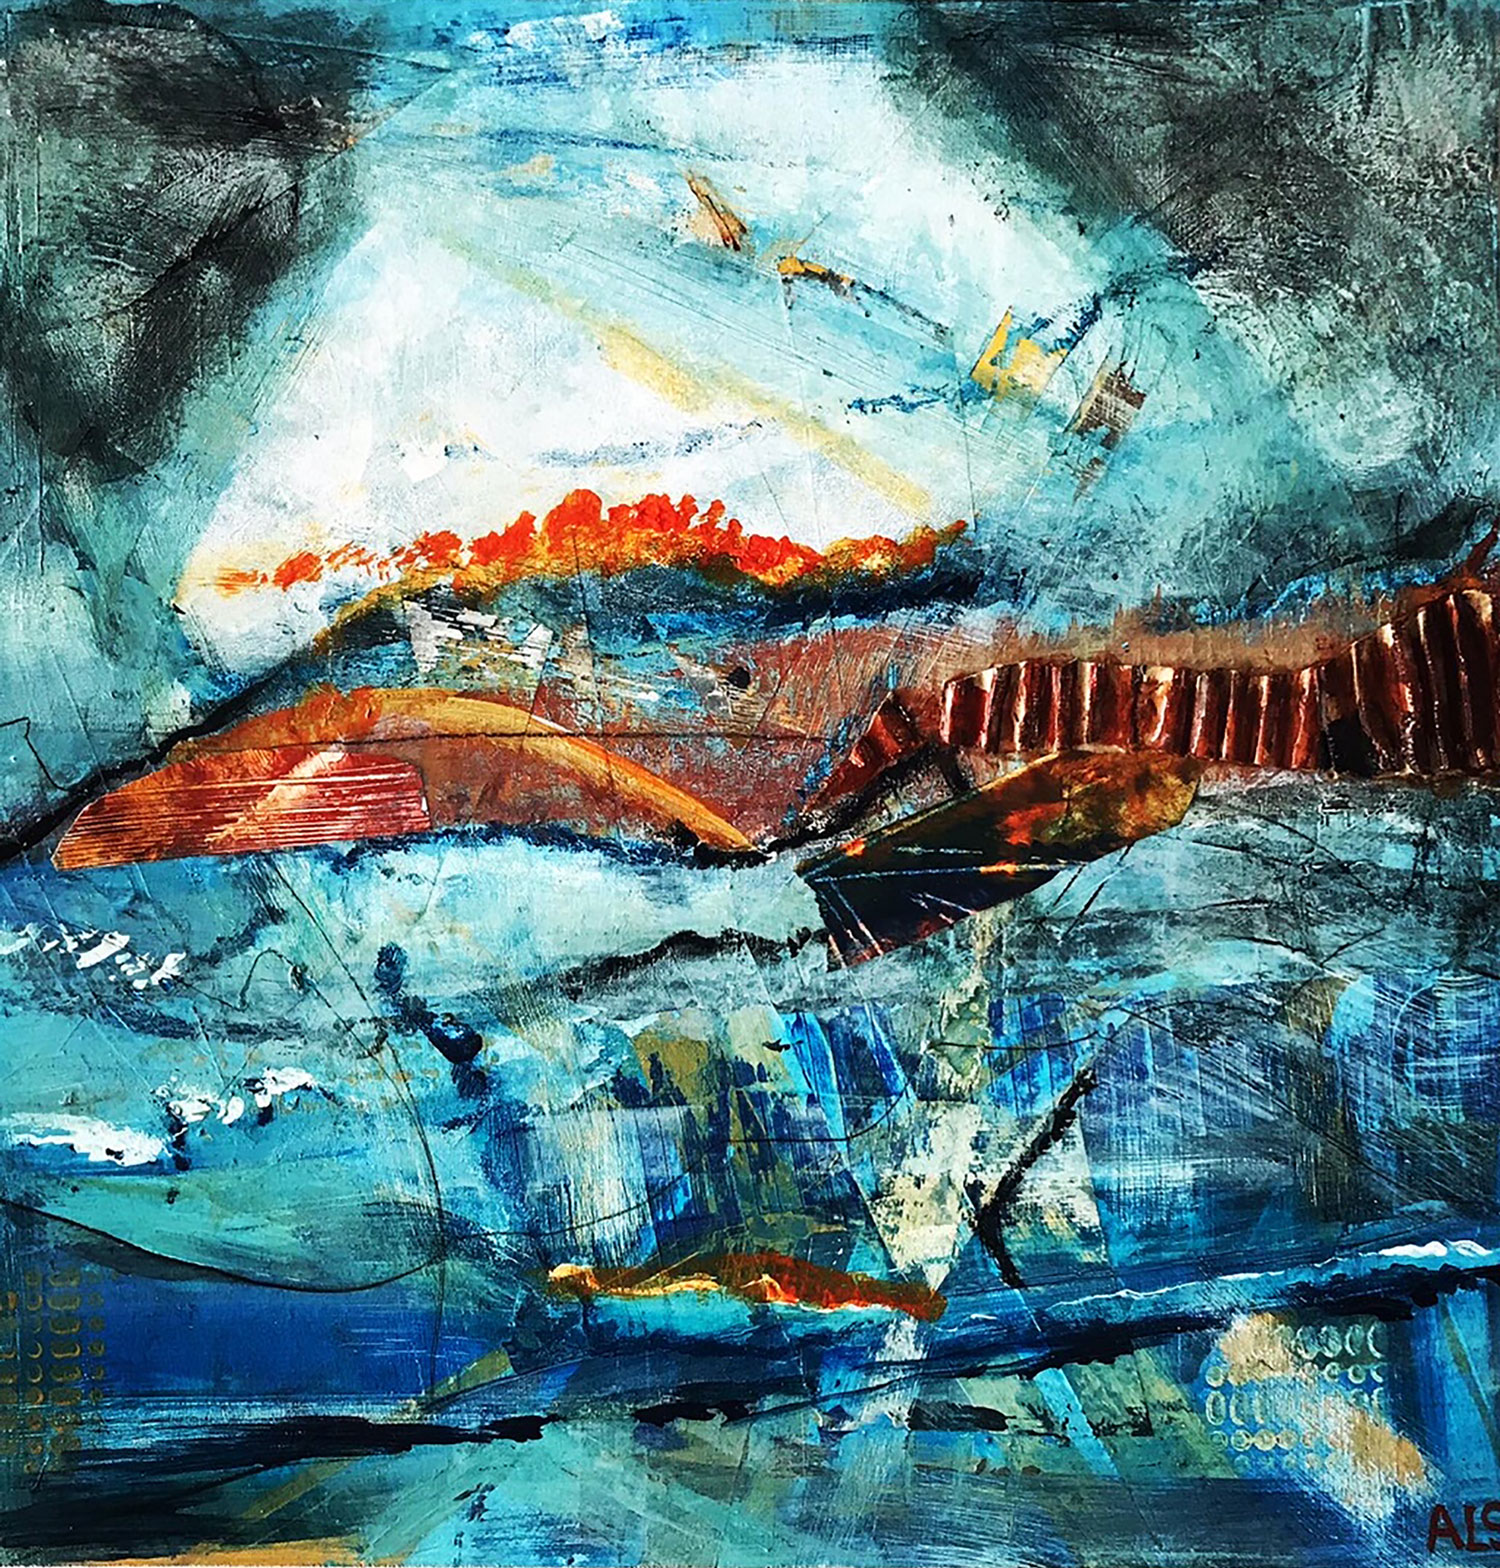 Coastal Chaos,Amanda Lyon-Smith,teignmouth,artist,devon